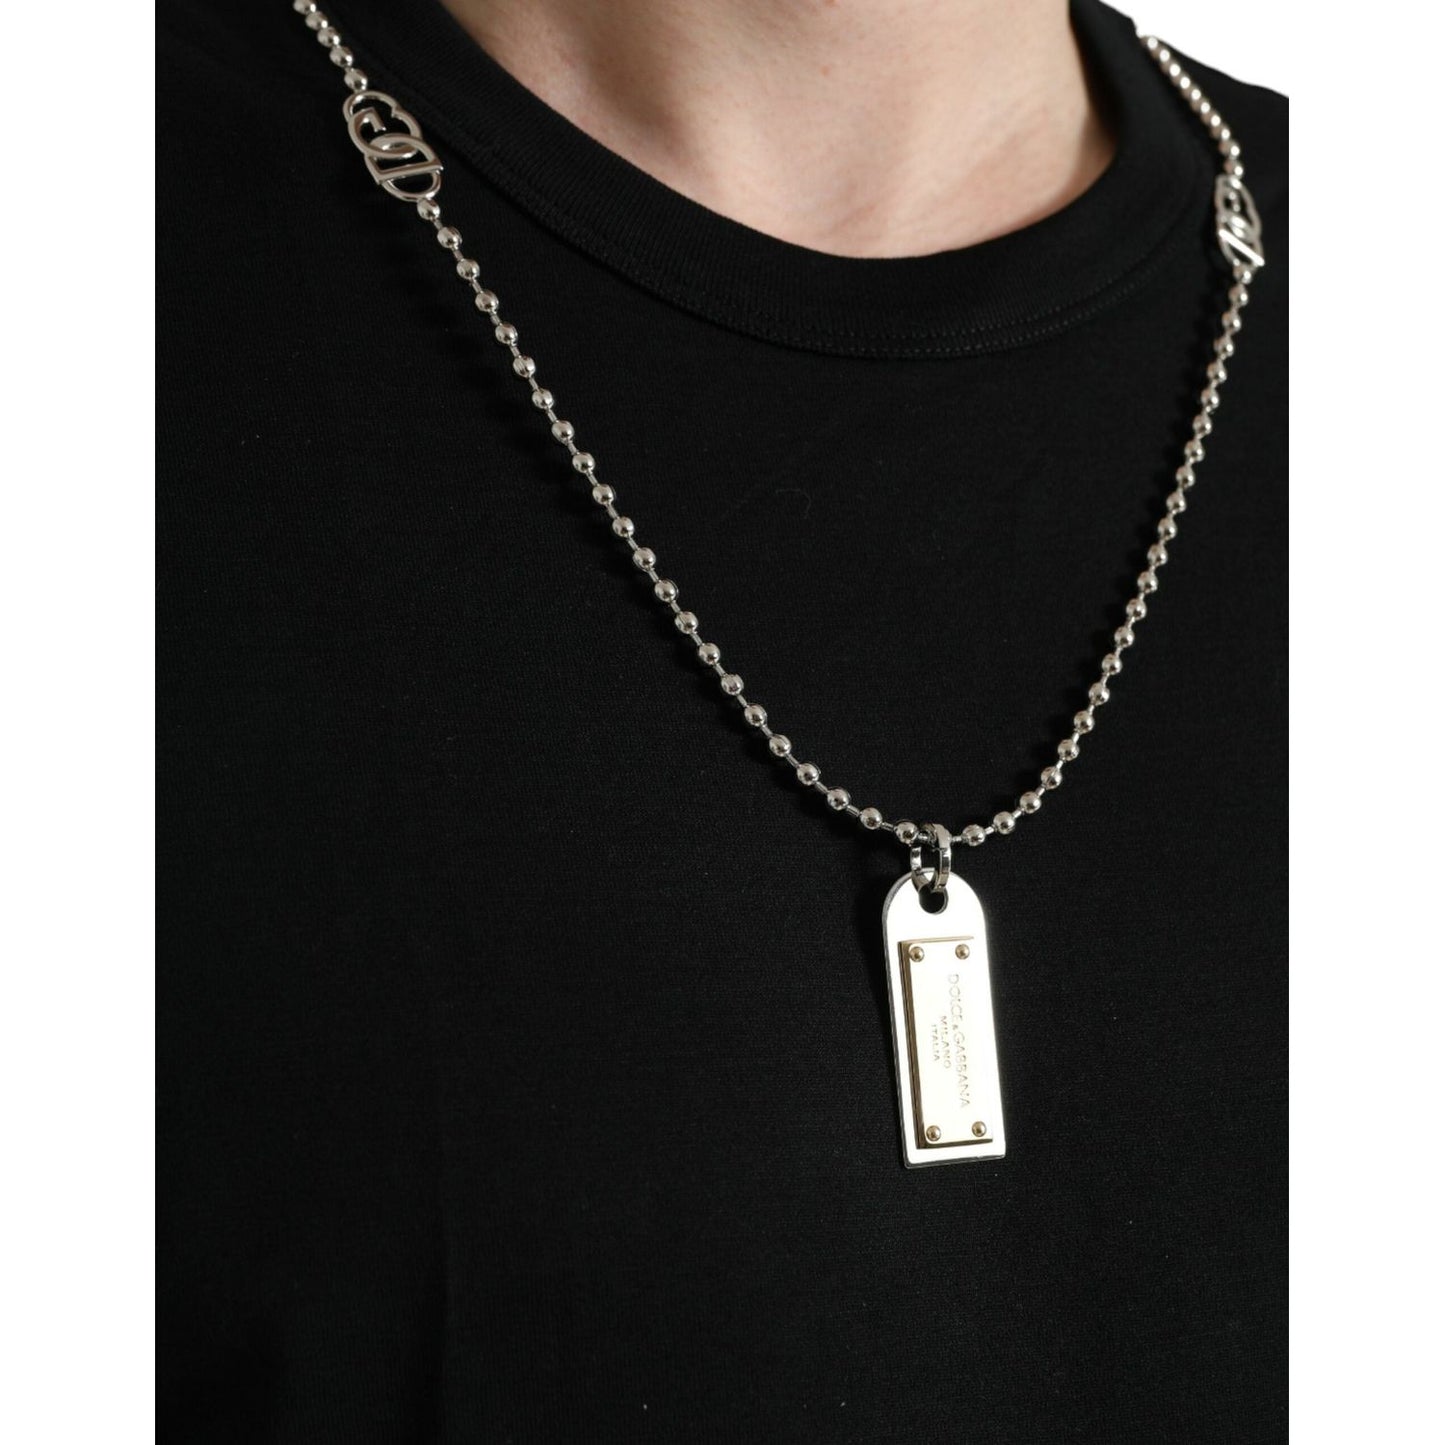 Dolce & Gabbana Sleek Cotton Round Neck T-Shirt with Chain Detail black-cotton-dog-tag-round-neck-t-shirt